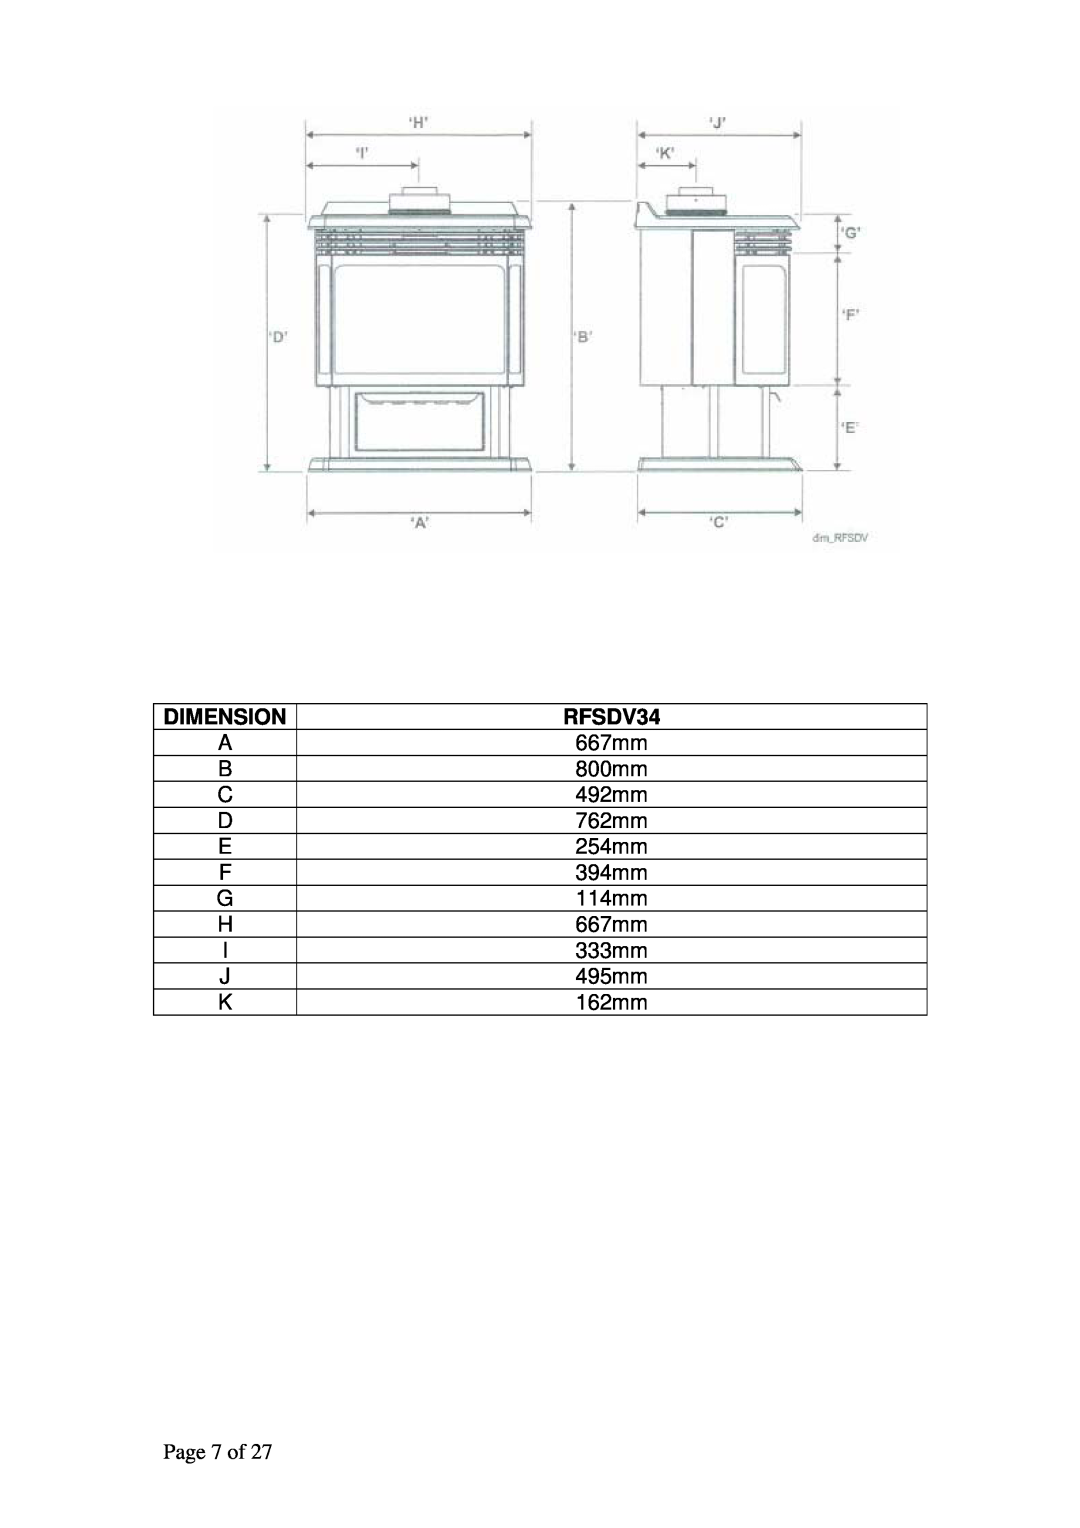 Raypak RFSDV34RFPAU, RFSDV34RFNAU manual Dimension, Page 7 of 